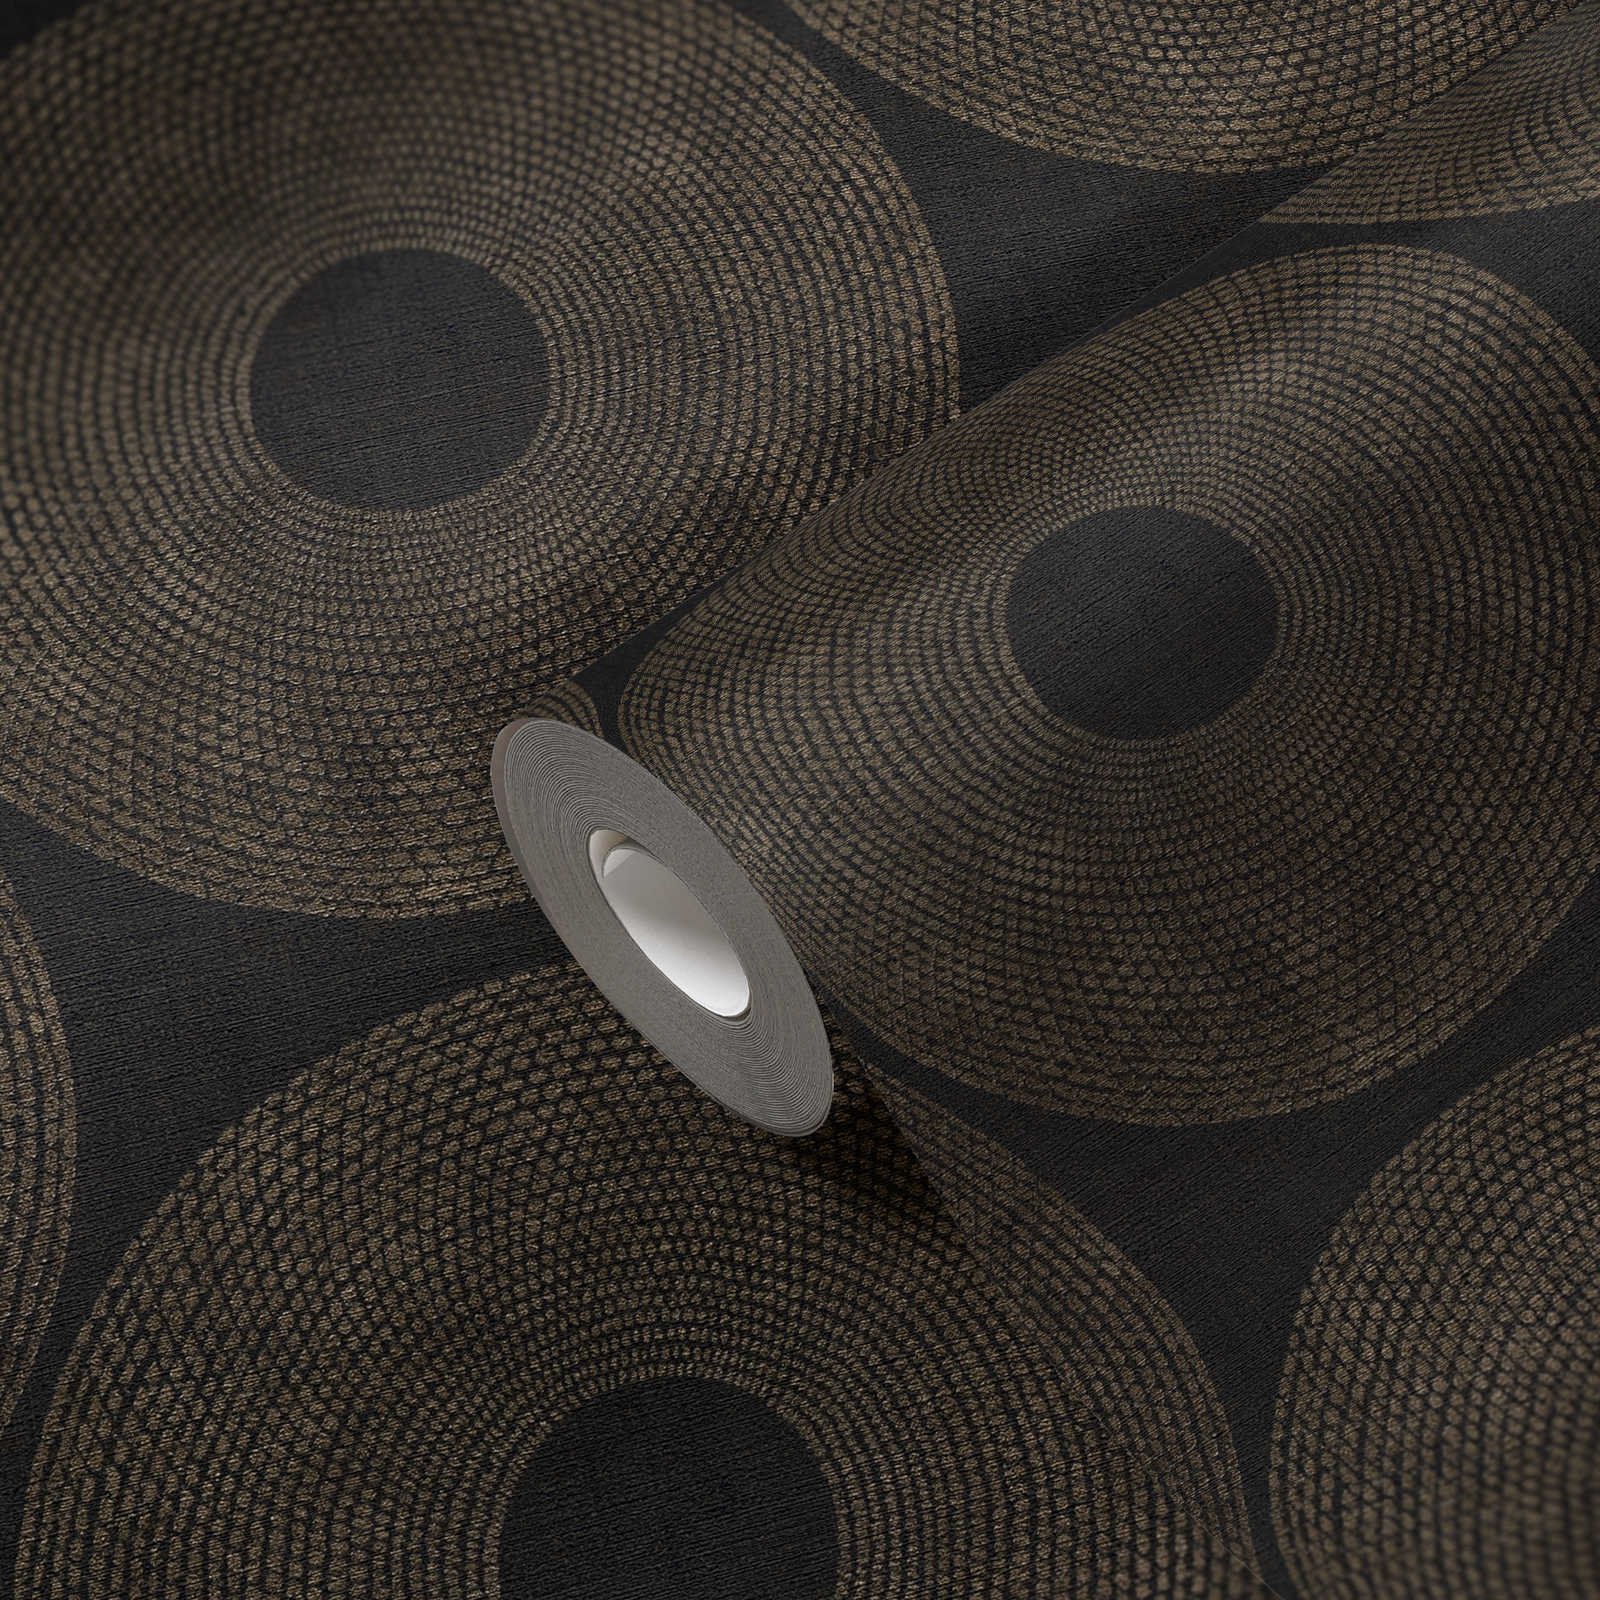             Papier peint ethnique Cercles avec motifs structurés - gris, marron
        